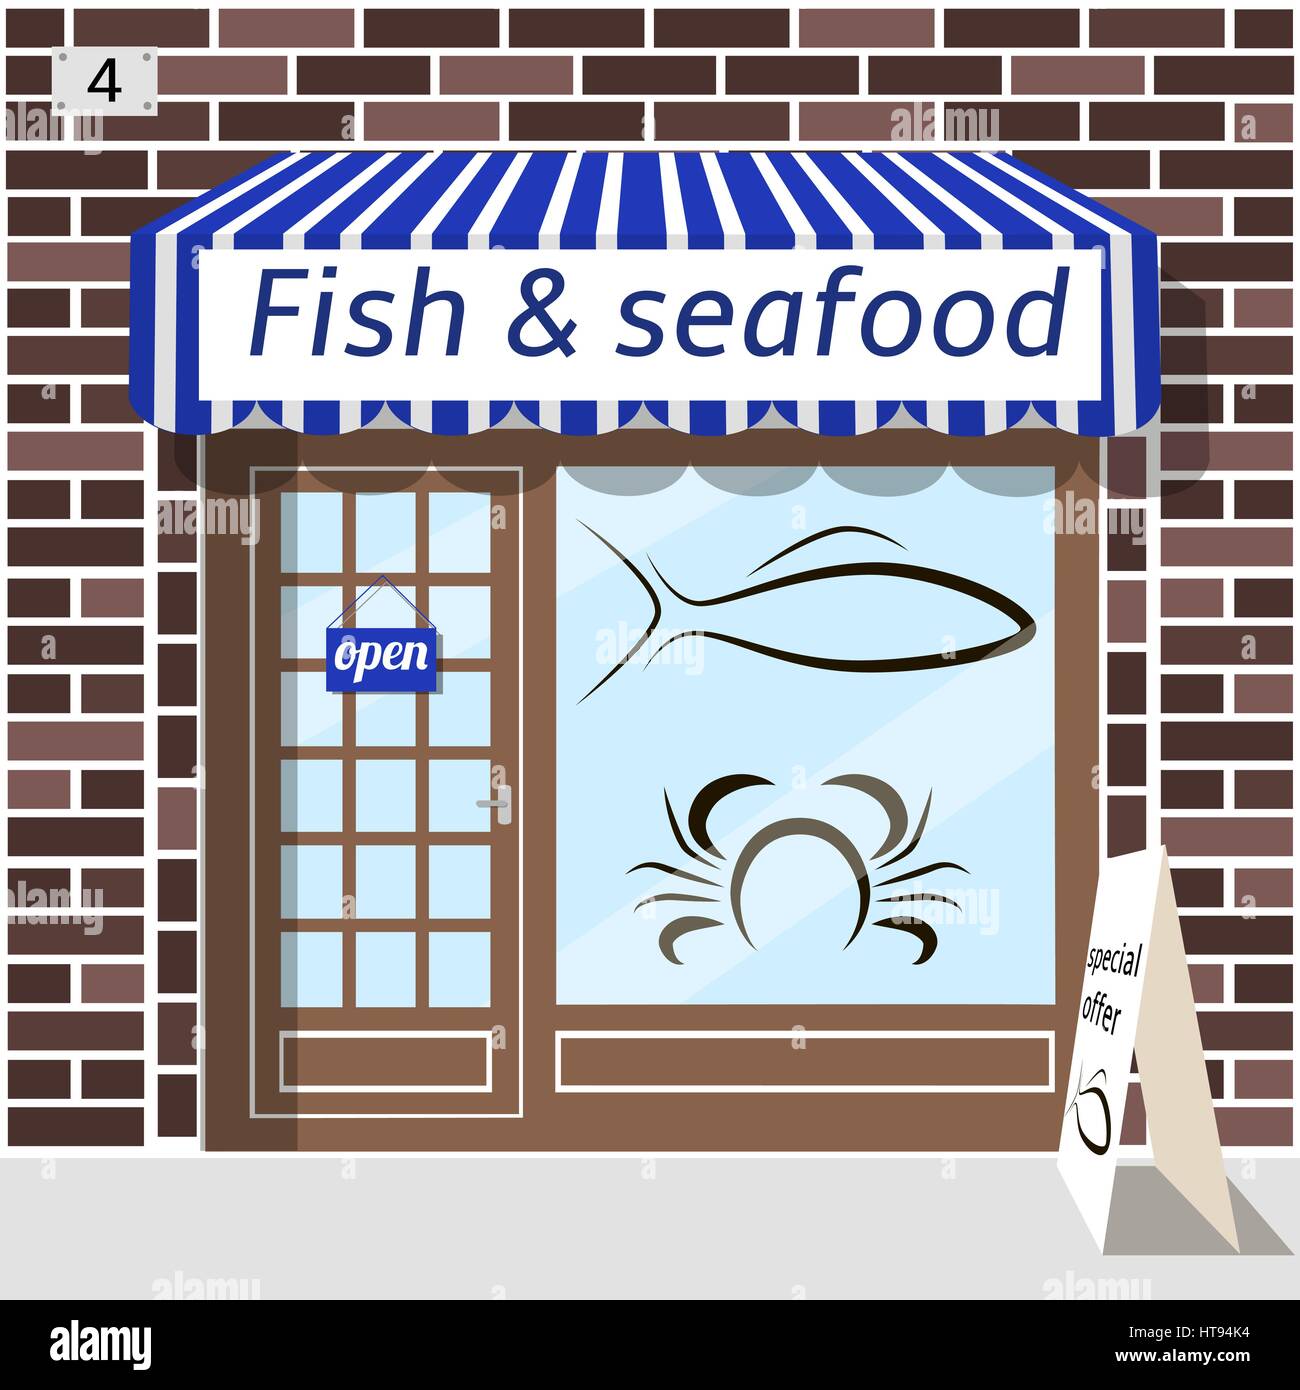 Pesce e frutti di mare shop. Illustrazione Vettoriale